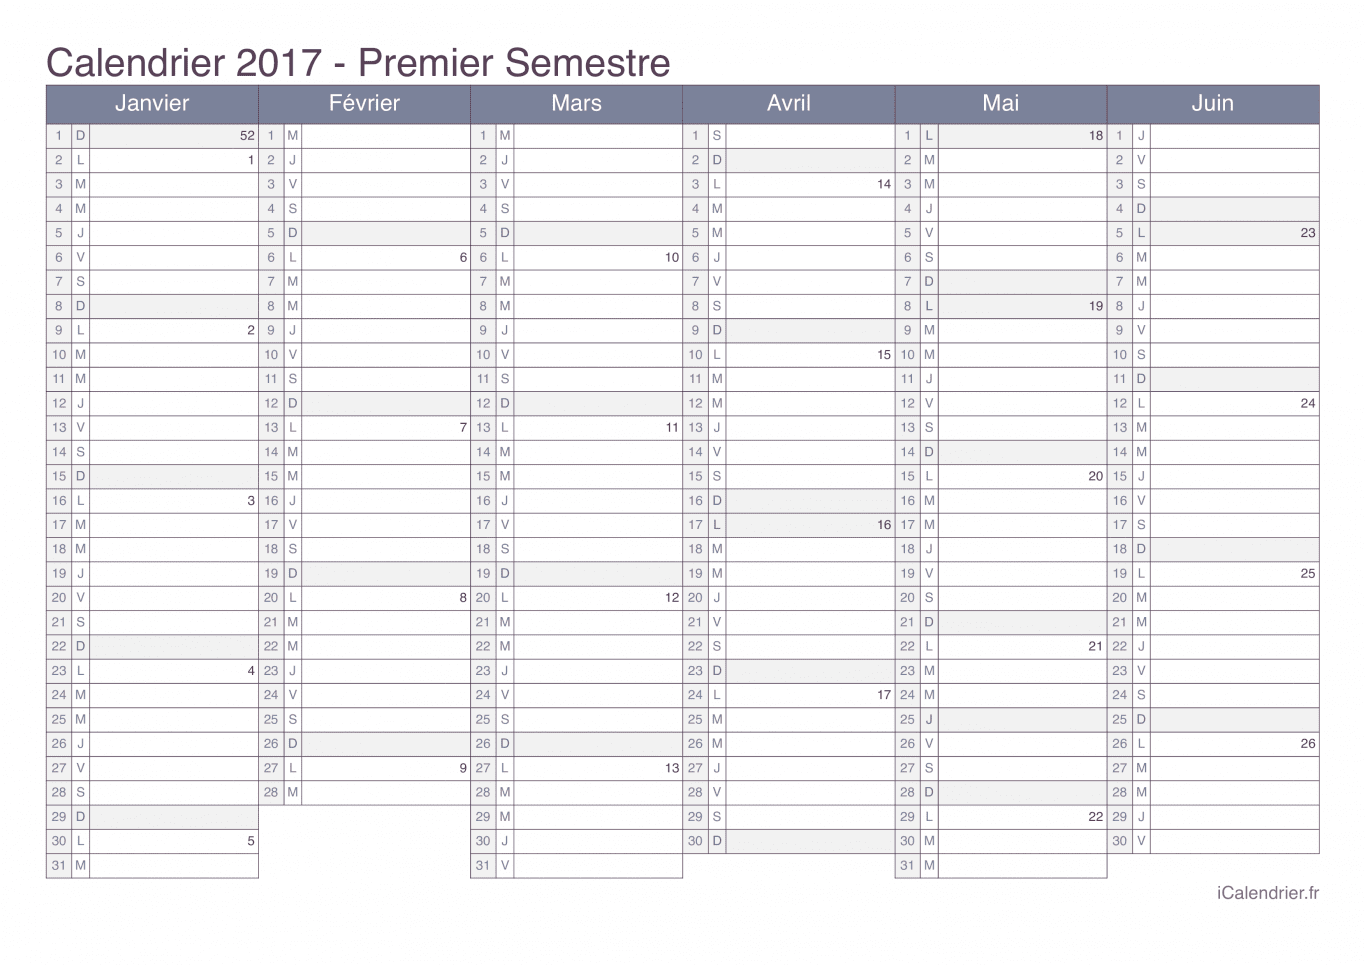 Calendrier par semestre avec numéros des semaines 2017 - Office